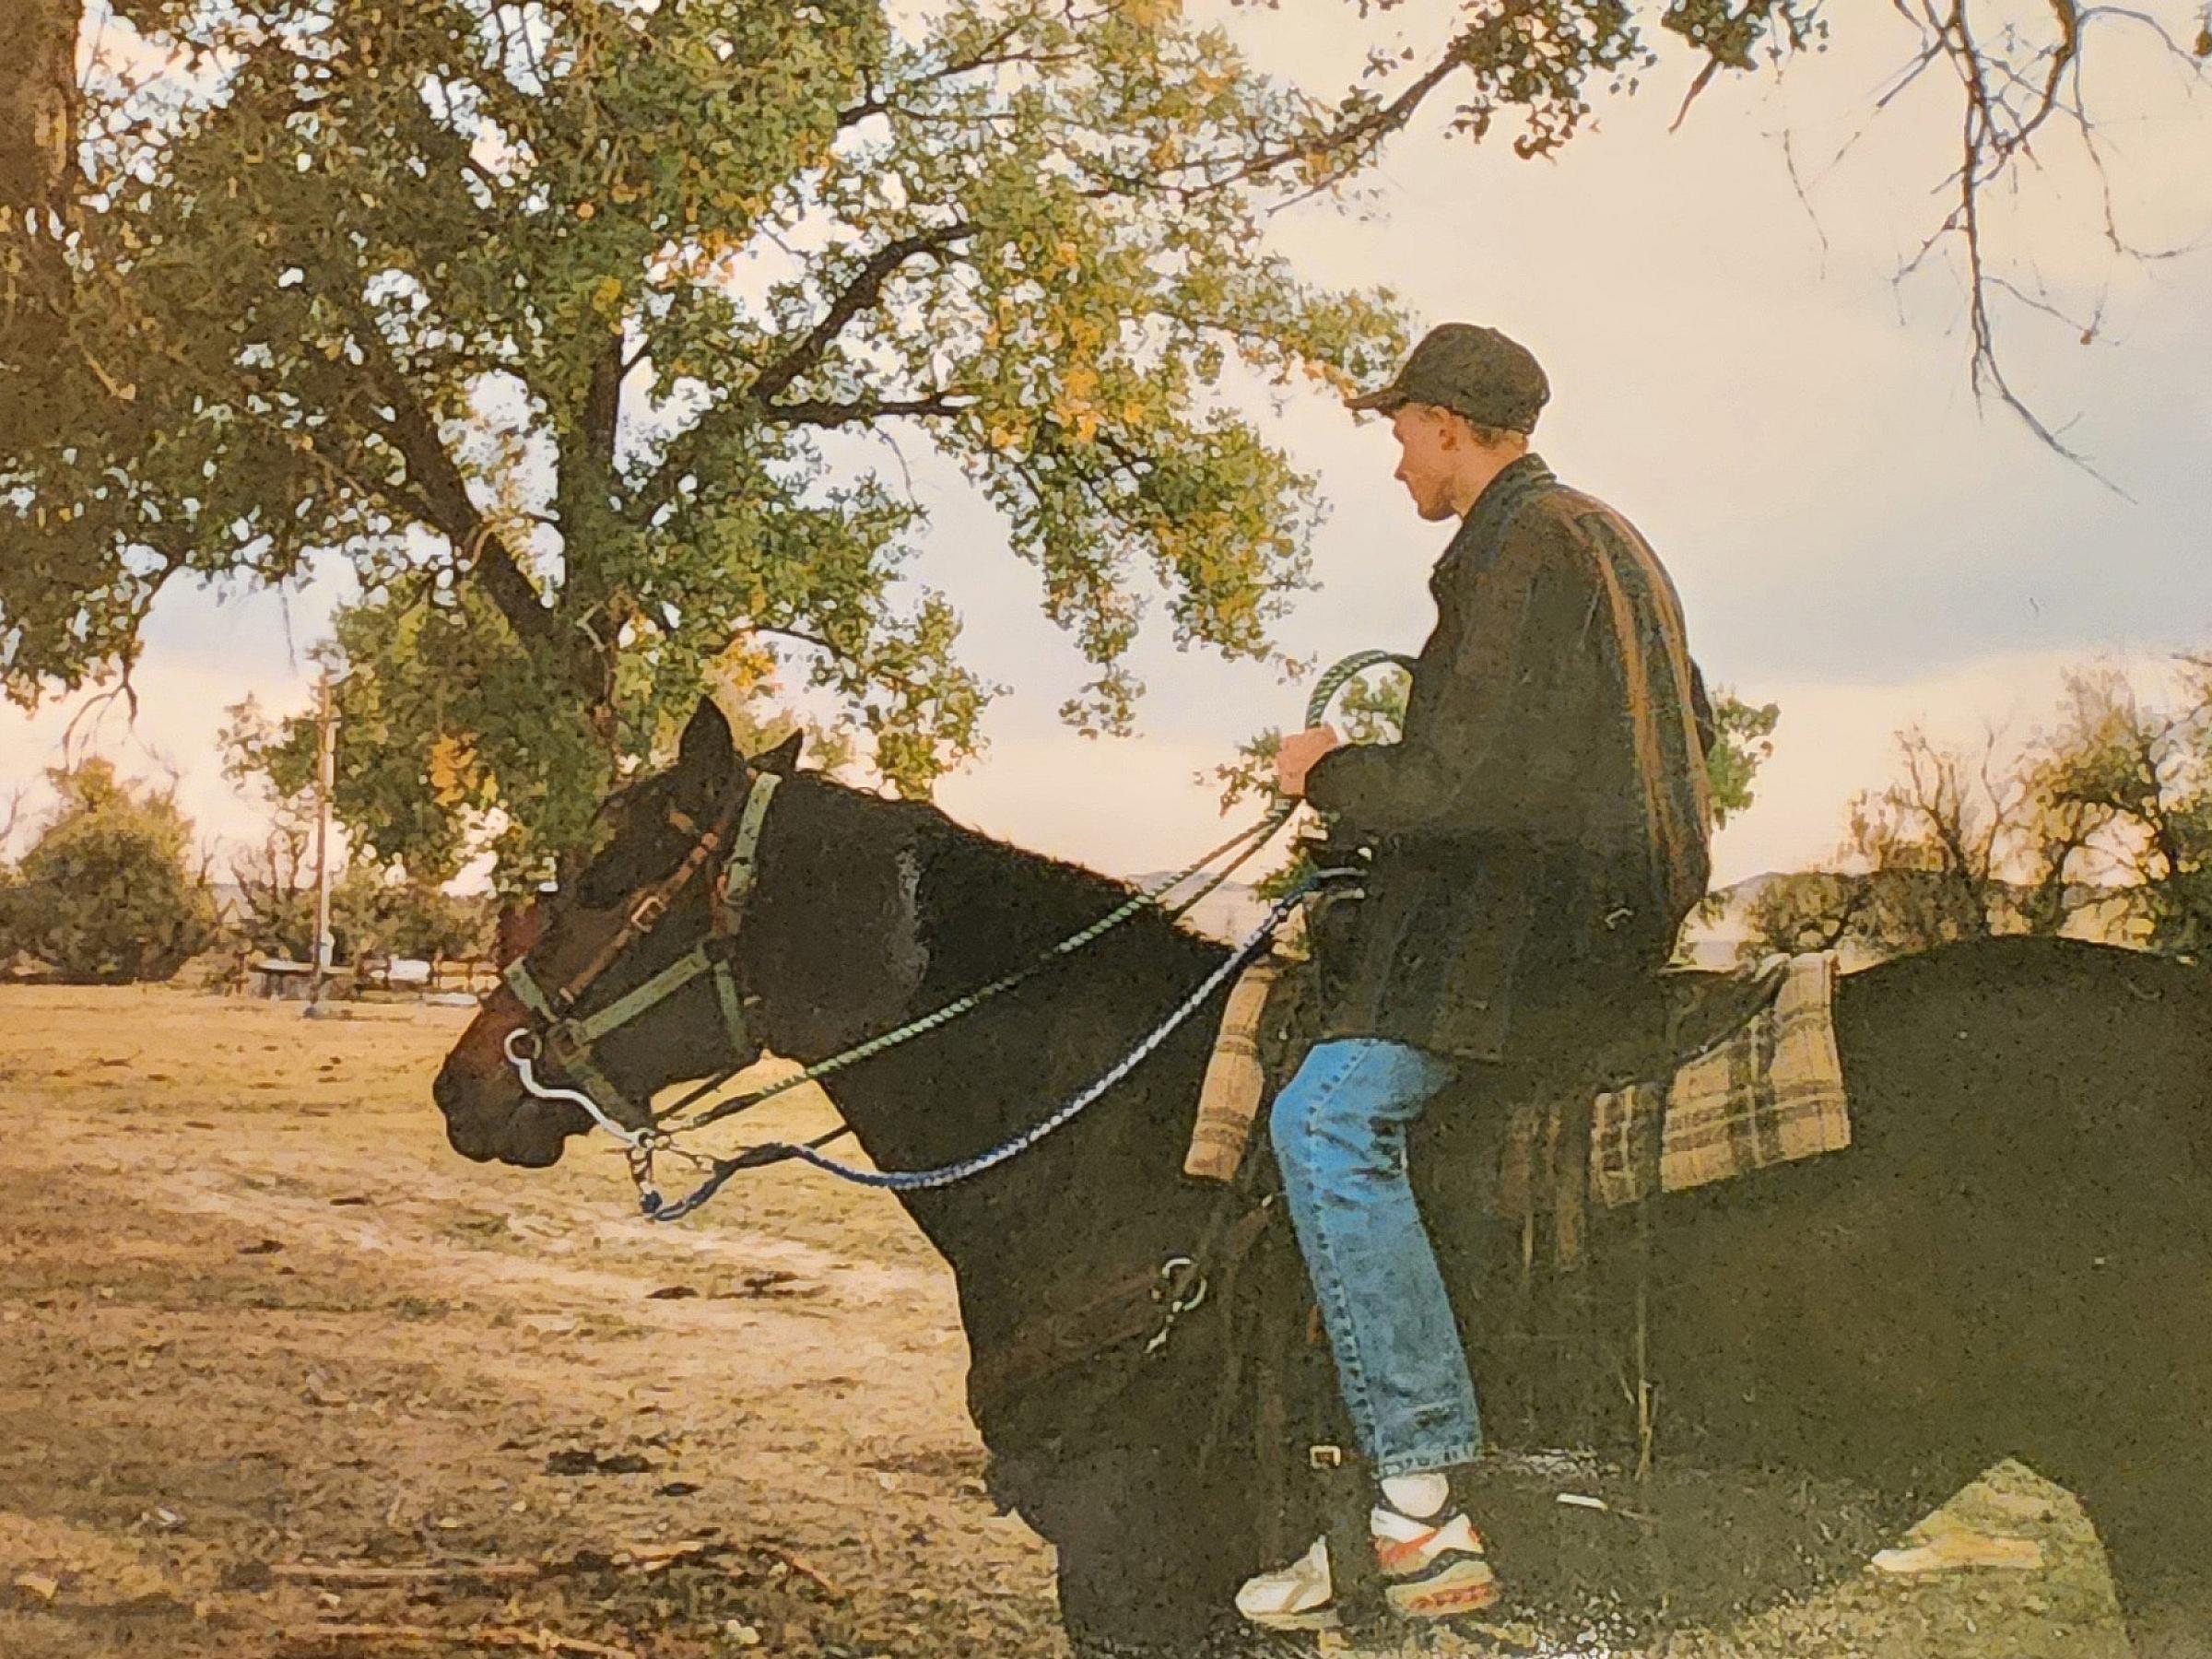 Jakob Jensen riding a horse.